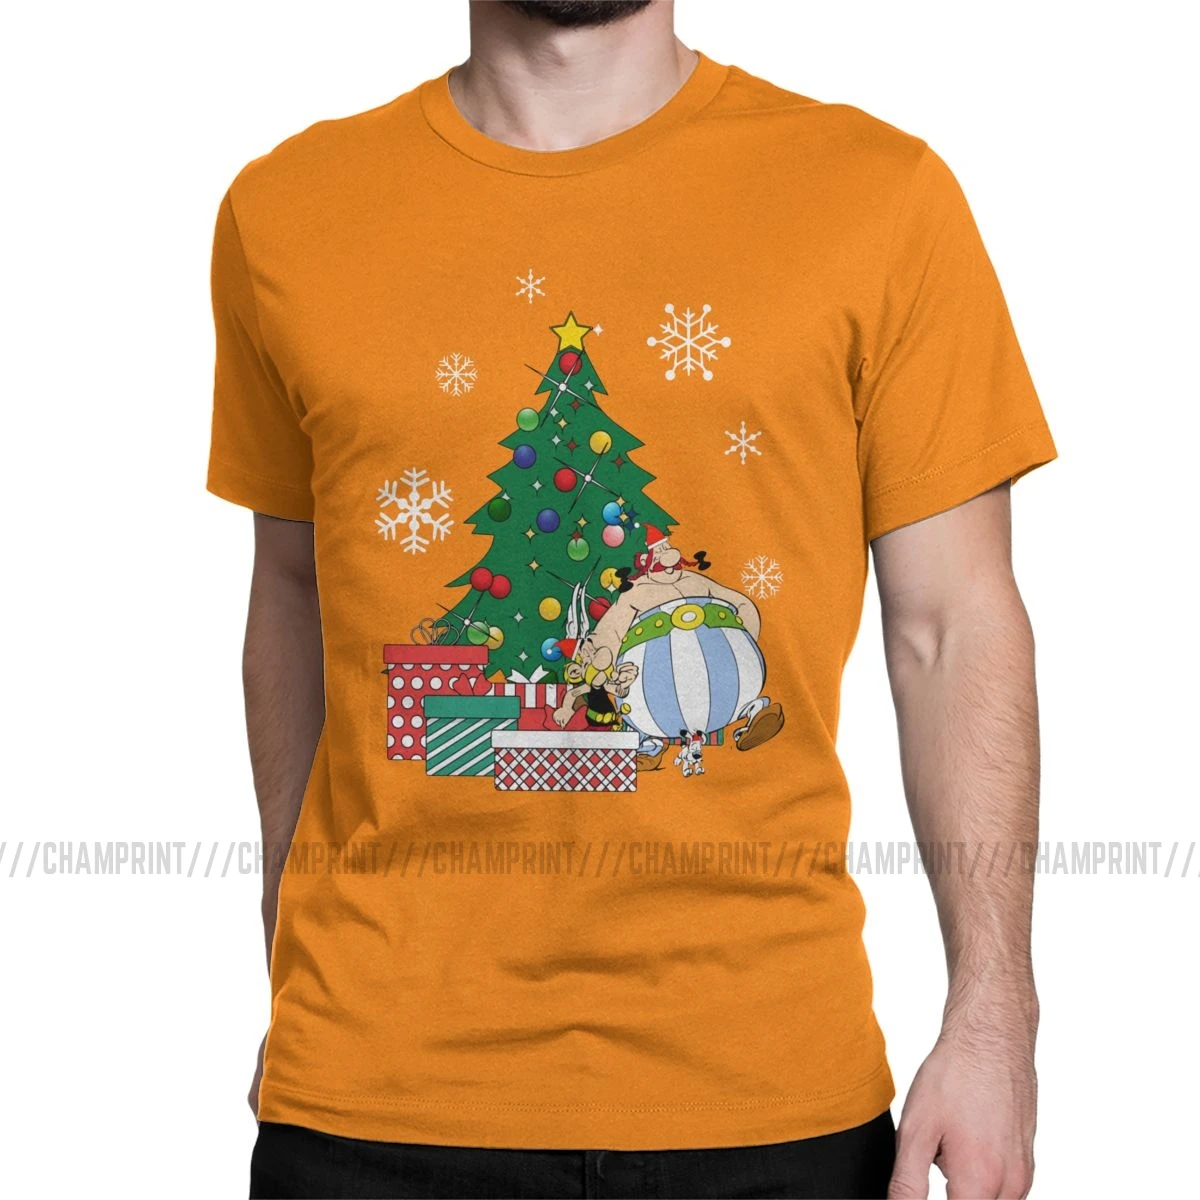 Мужская футболка Астерикс и Обеликс вокруг рождественской елки, хлопковые топы Getafix Dogmatix, футболка с коротким рукавом, подарок на день рождения, футболки - Цвет: Оранжевый